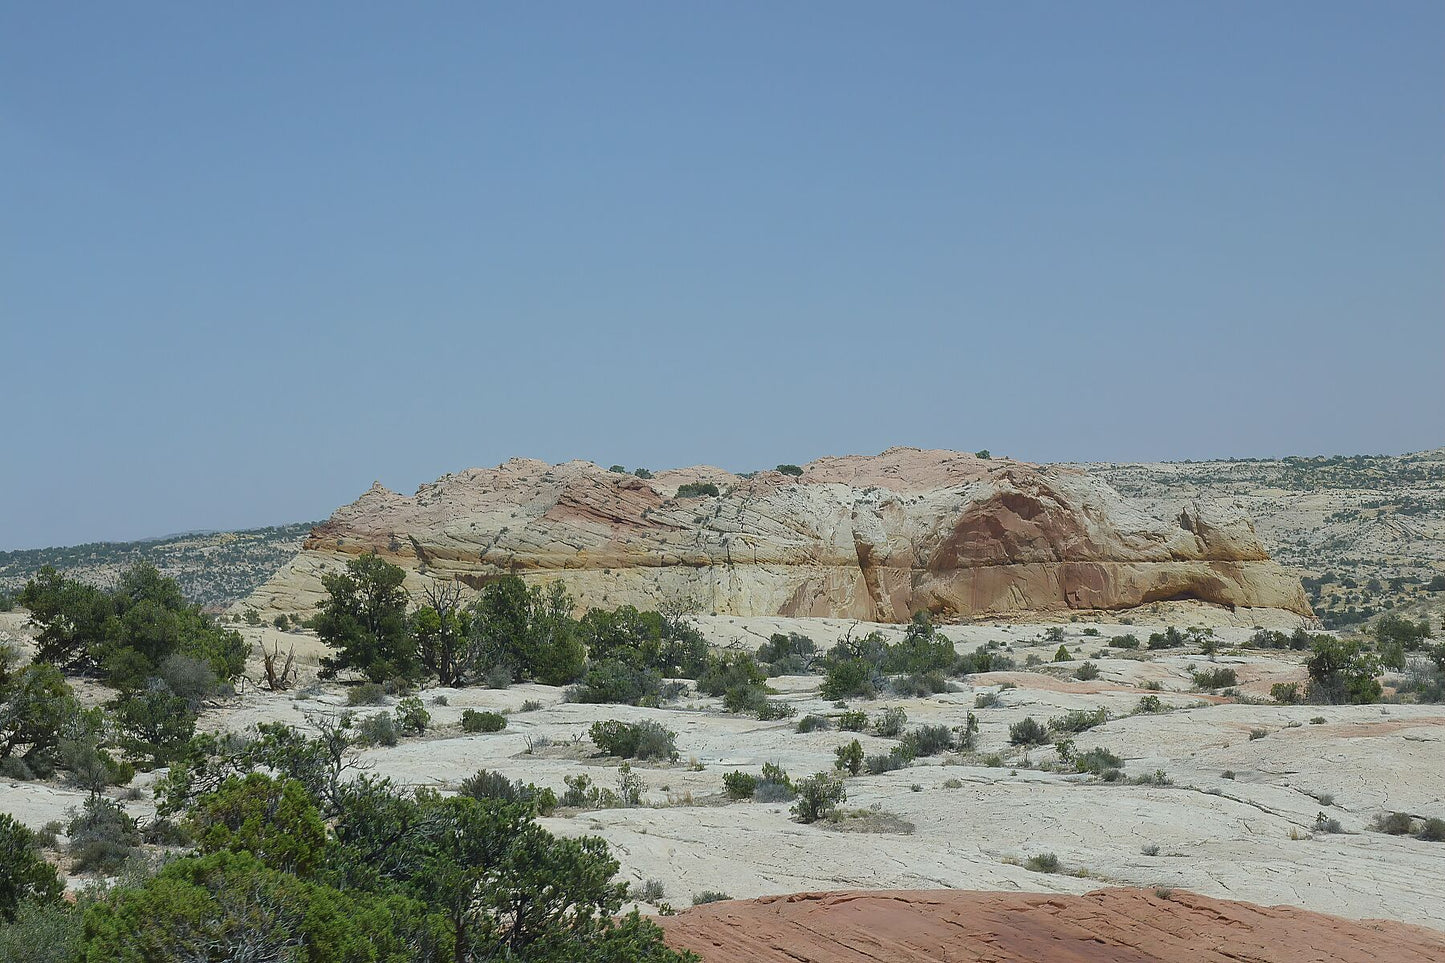 Escalante National Monument